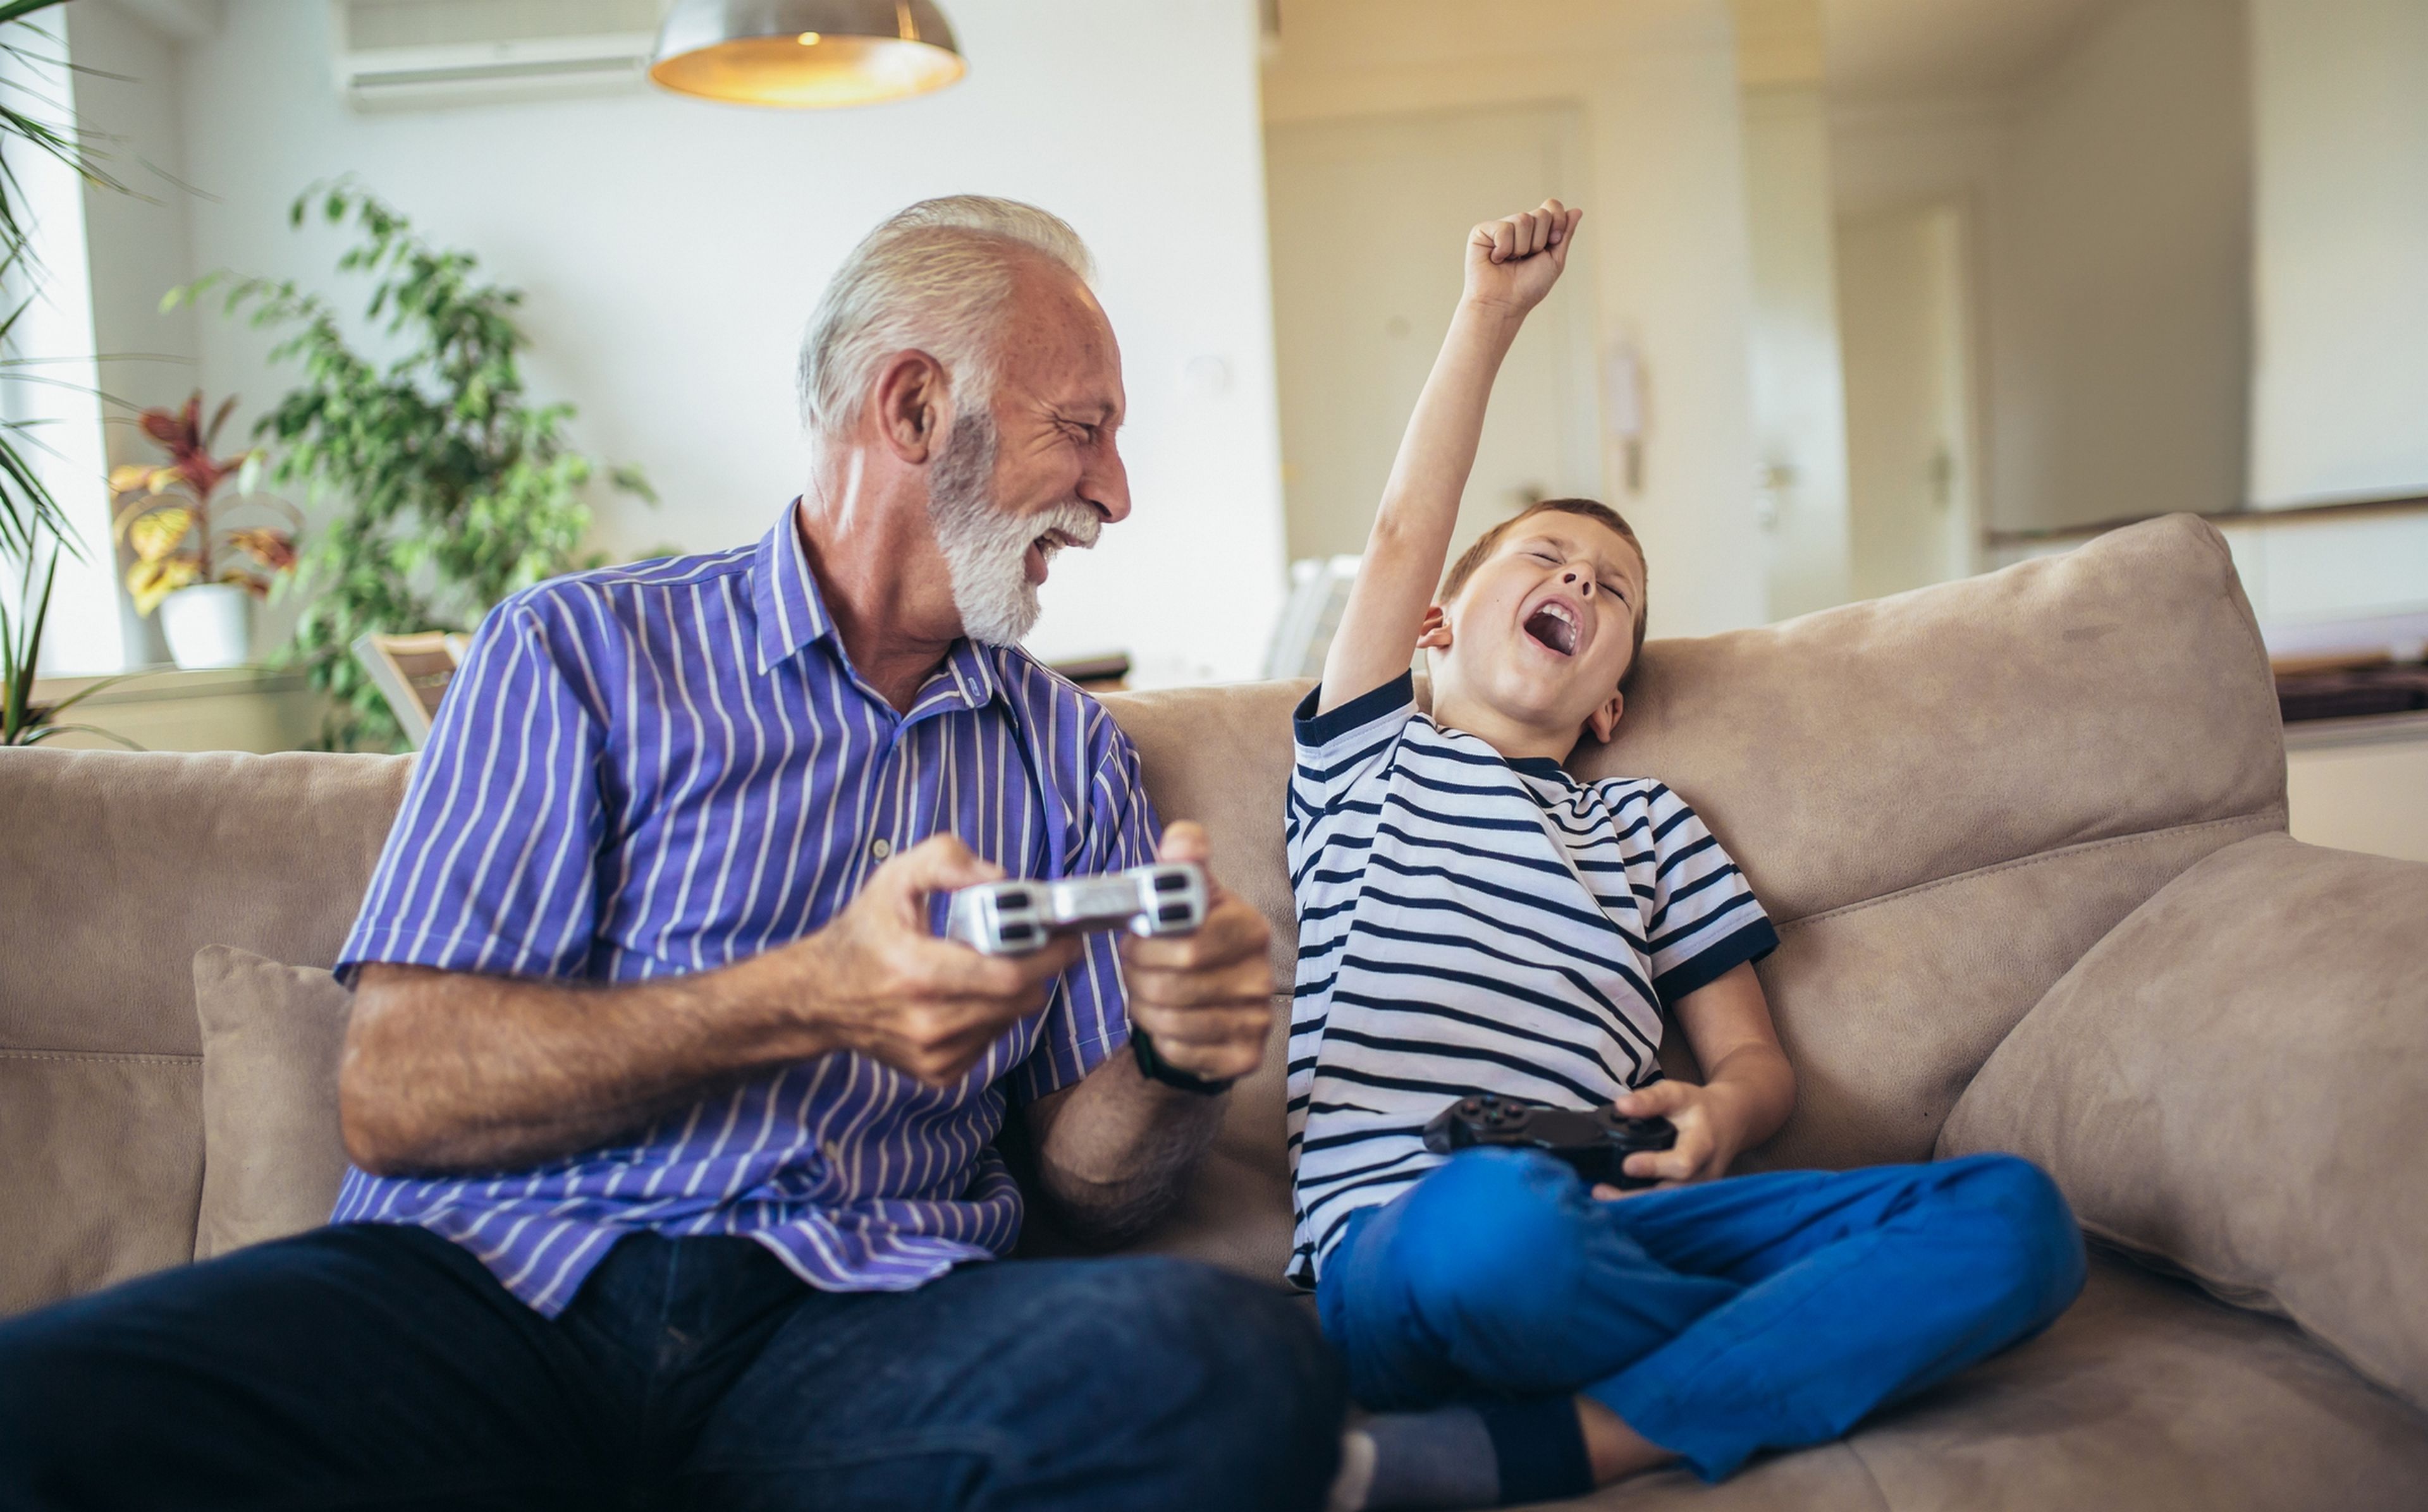 Un estudio pionero de la universidad de Oxford afirma que jugar a videojuegos es beneficioso para la salud